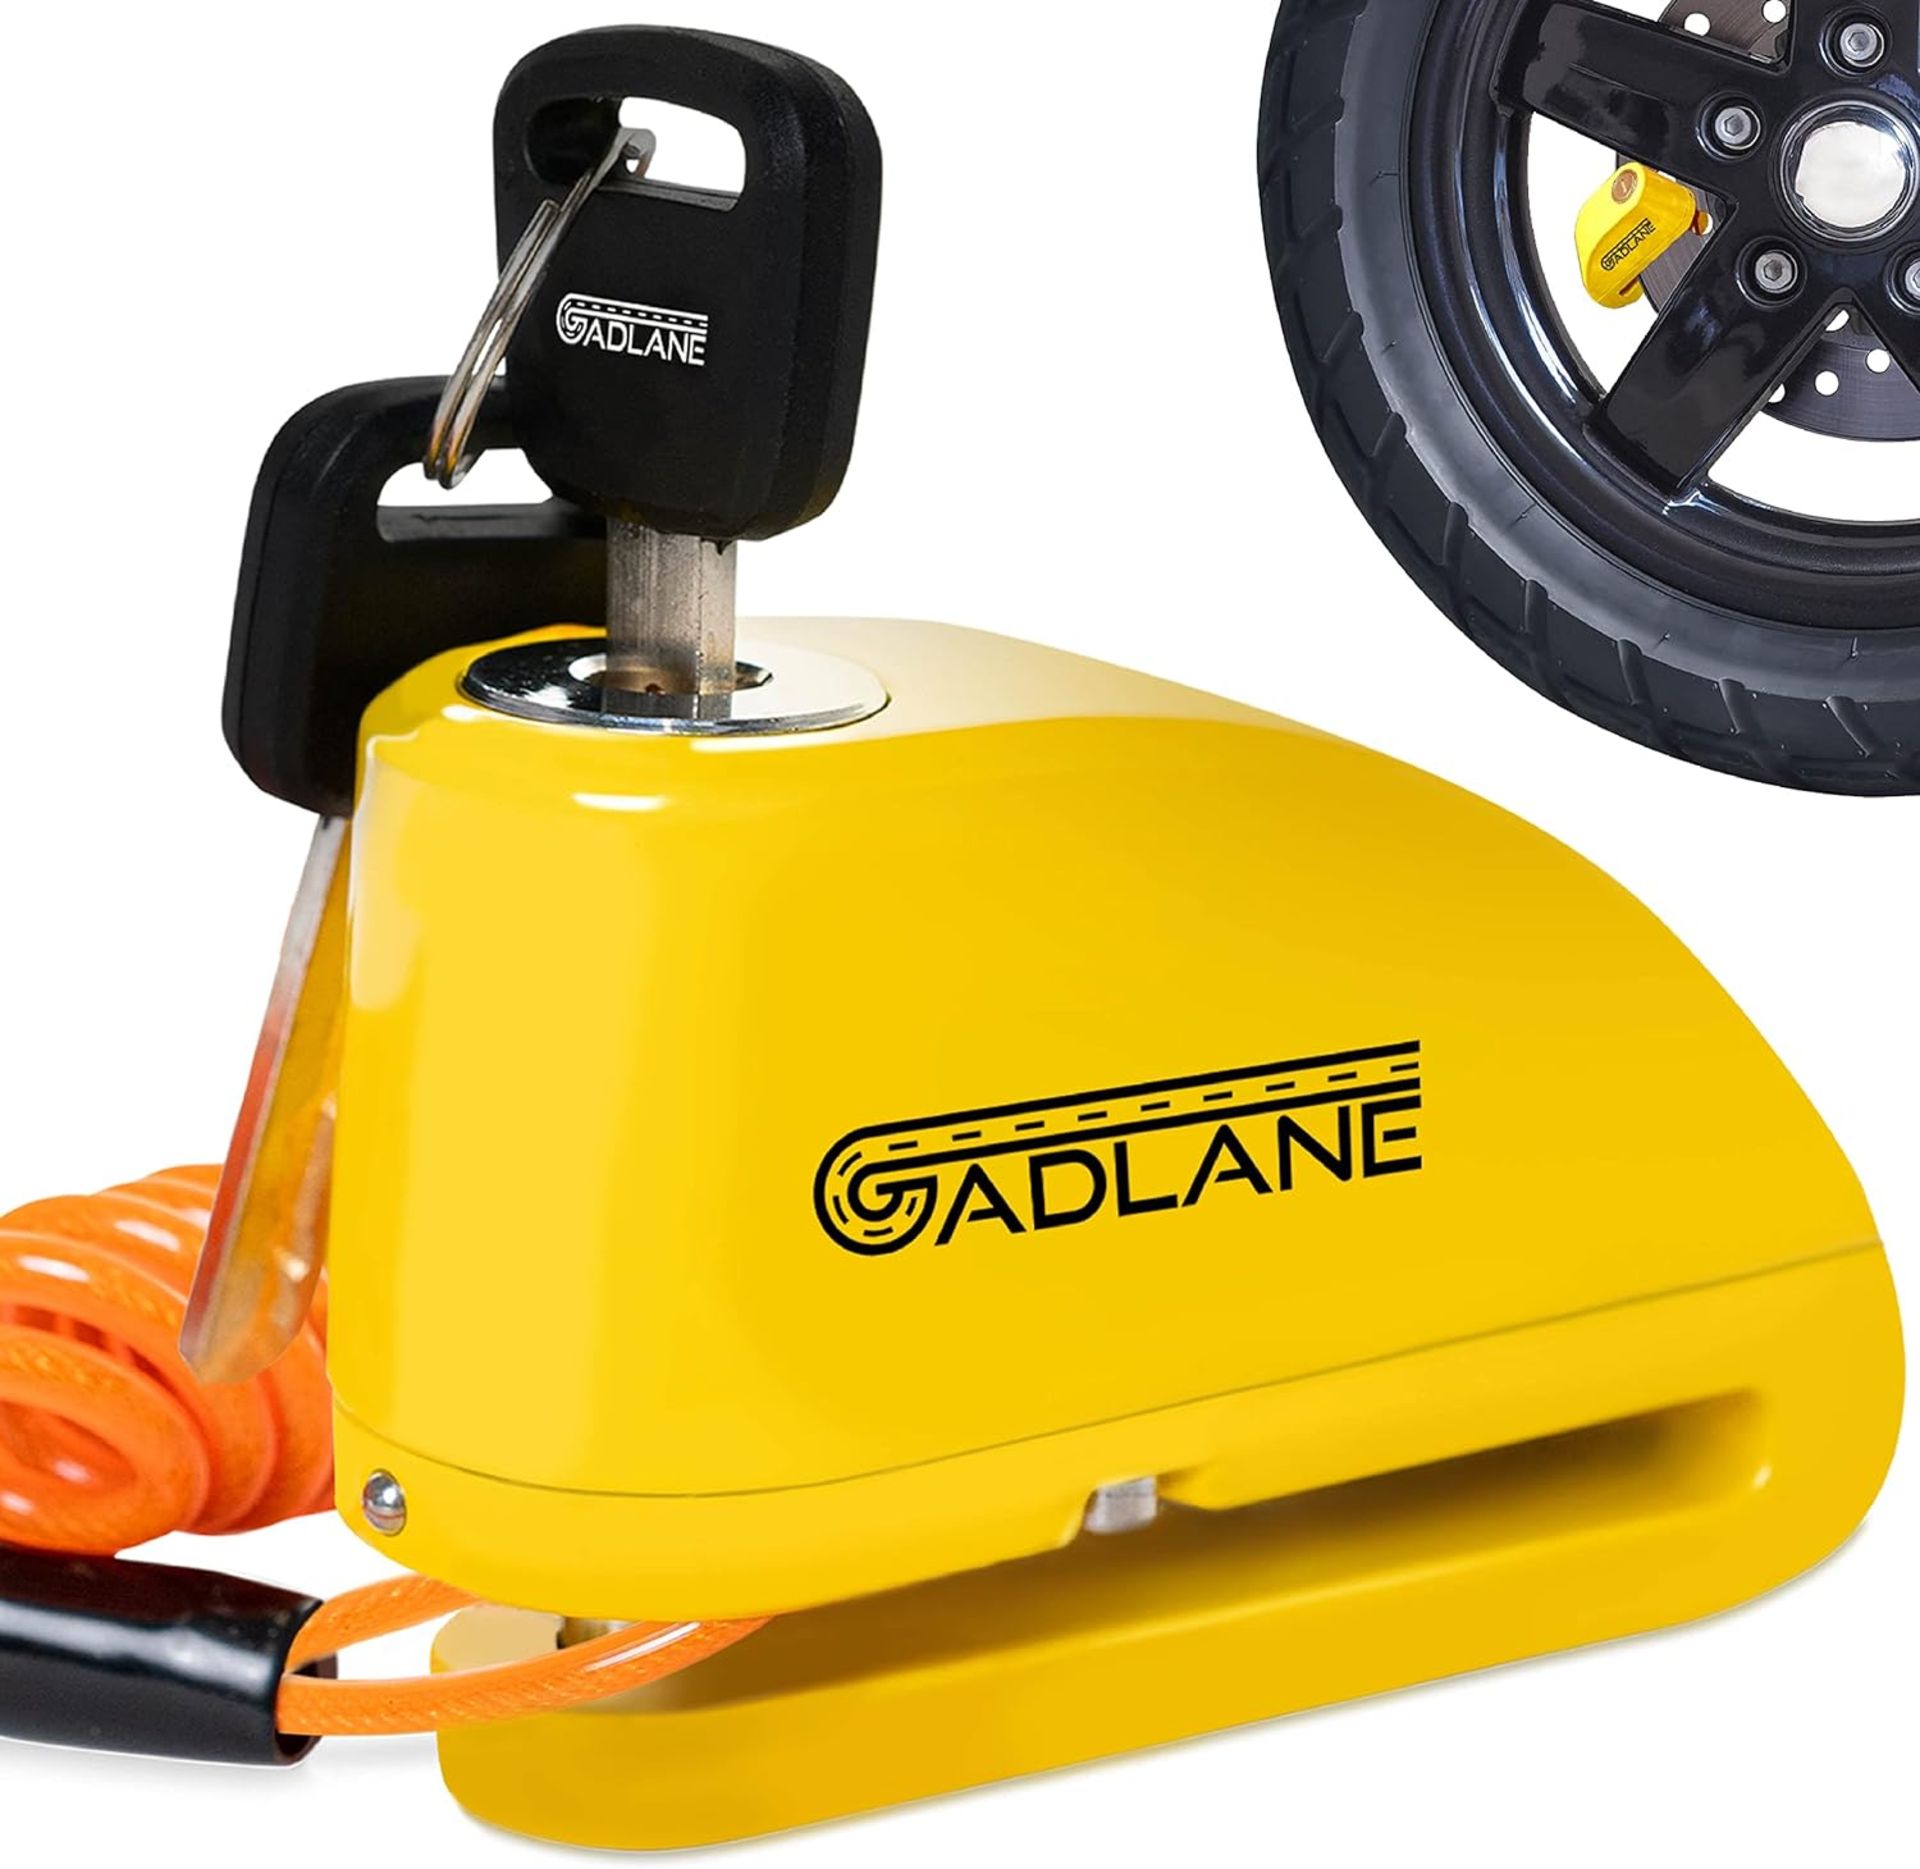 RRP £19.99 GADLANE Motorcycle Alarm Disc Lock - 110dB High Security Waterproof Alarm Lock